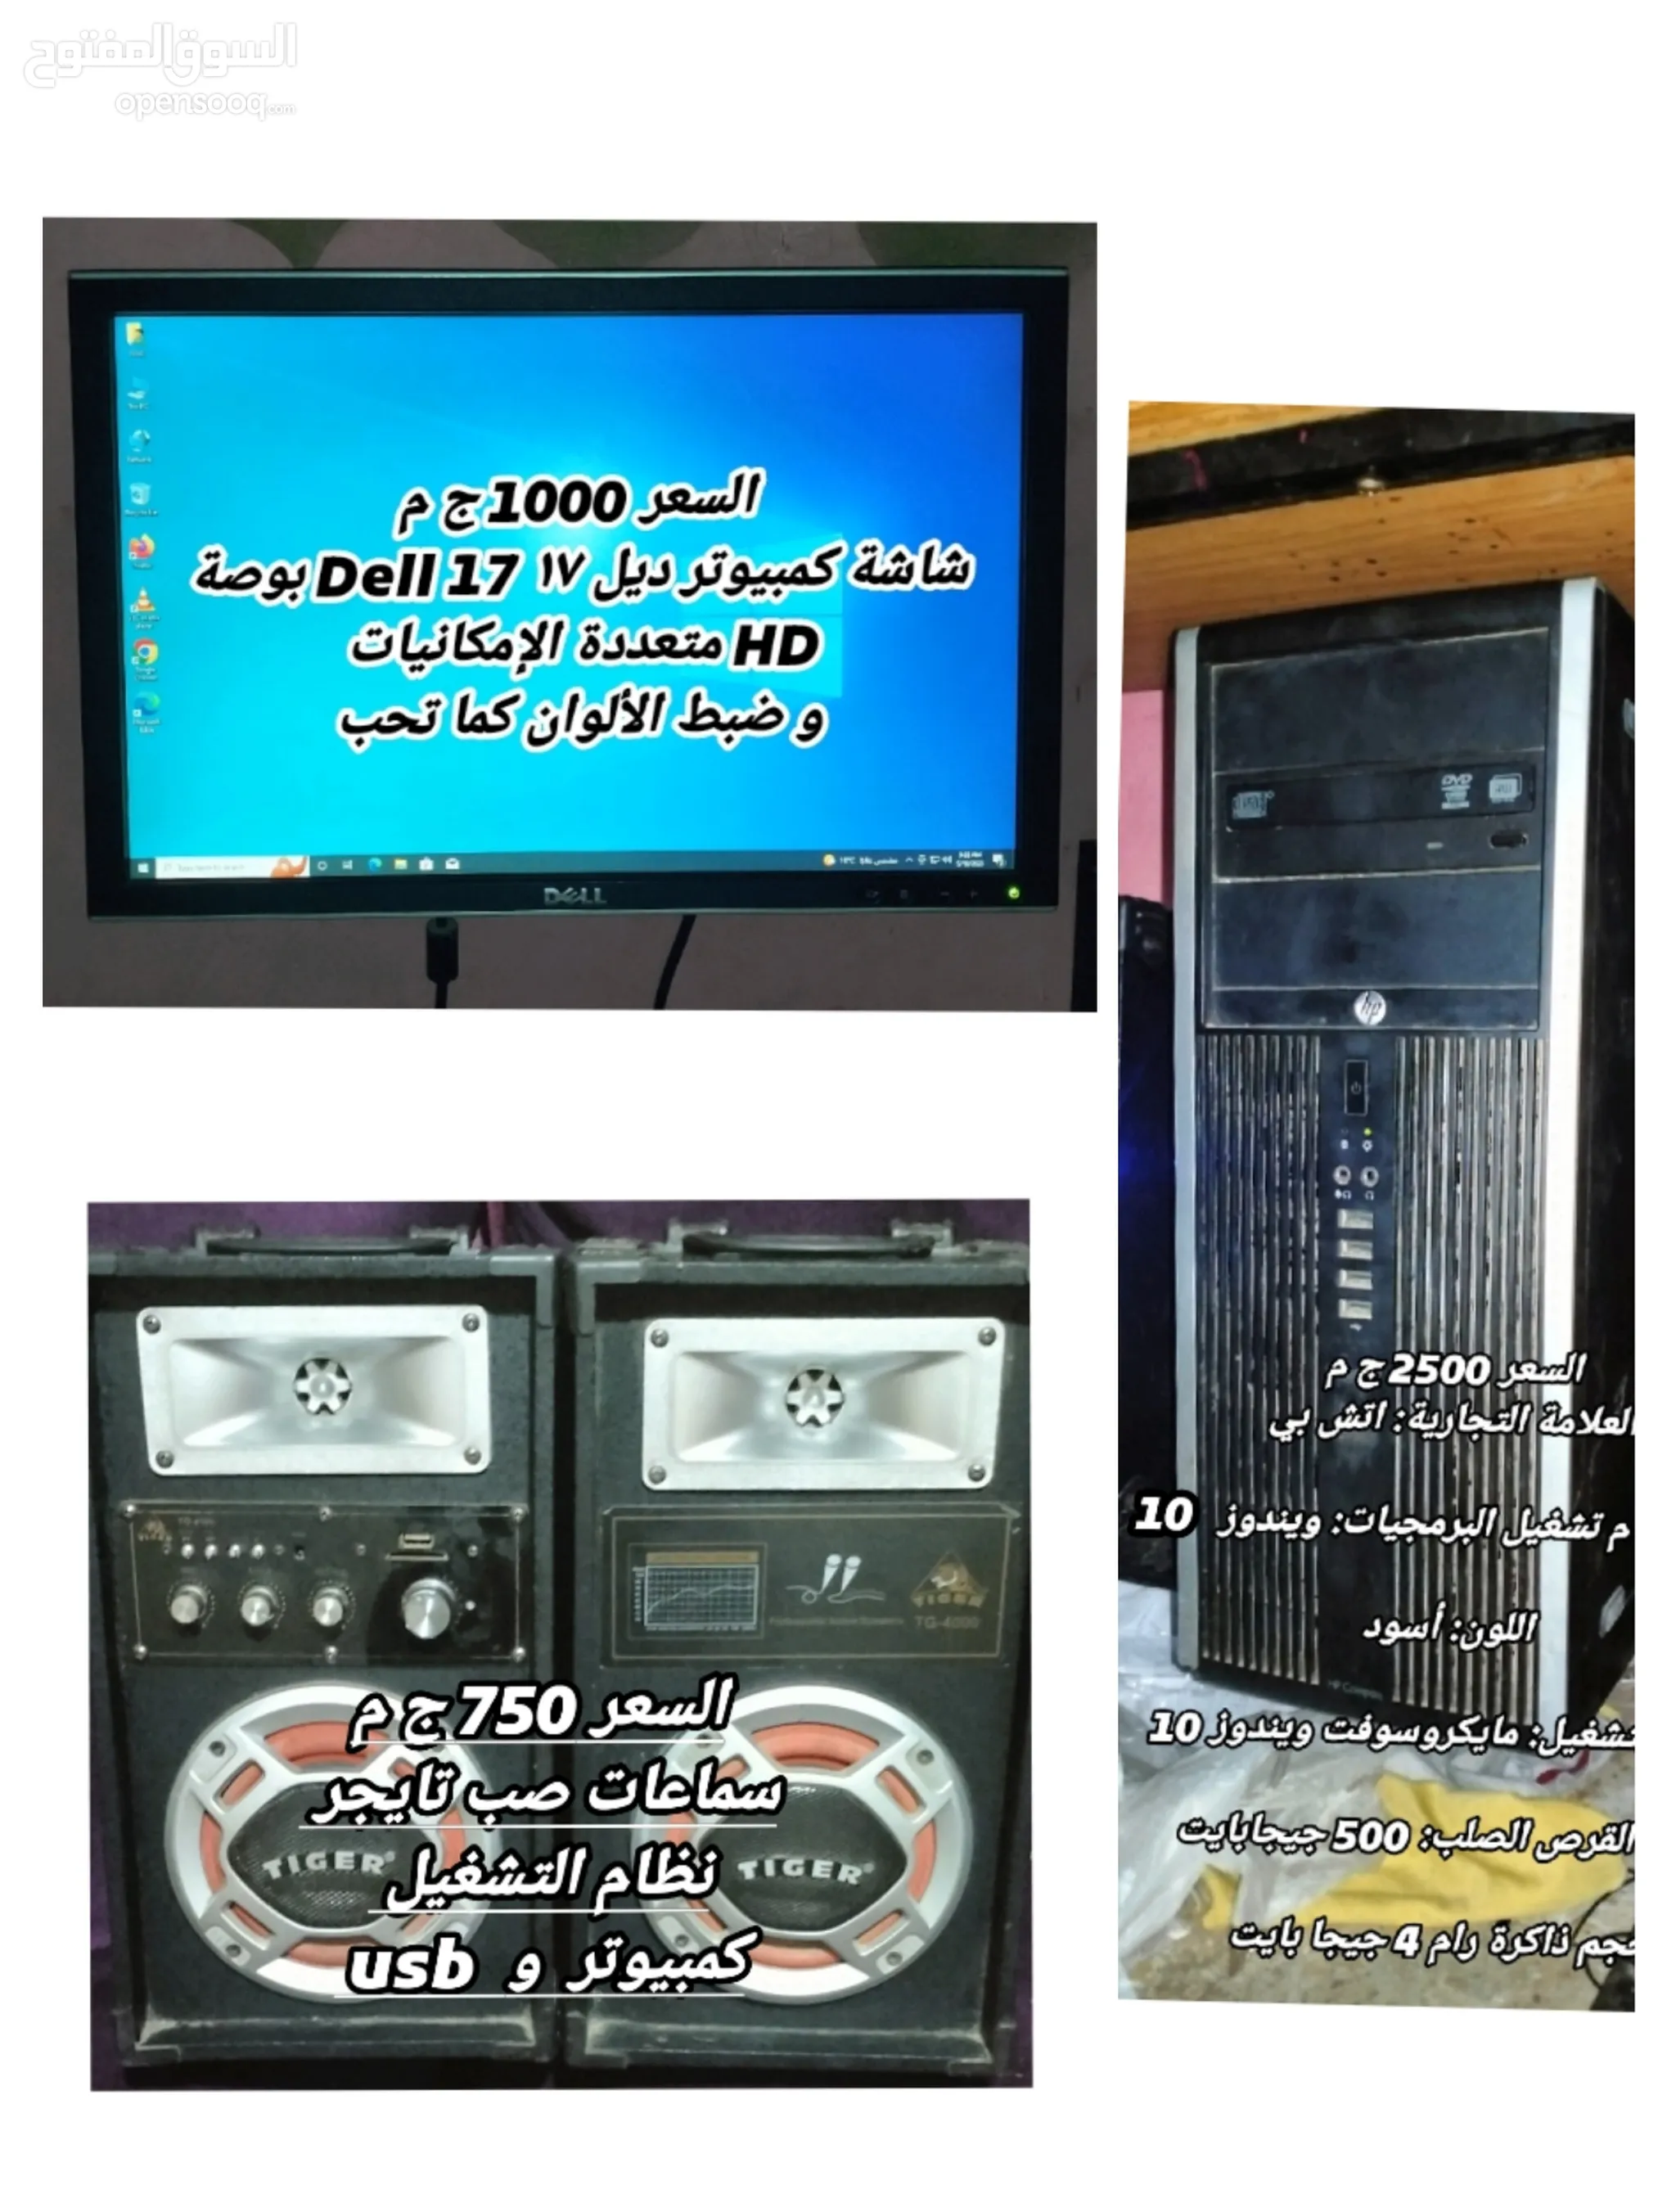 كمبيوتر مكتبي ديل للبيع في مصر : افضل سعر | السوق المفتوح